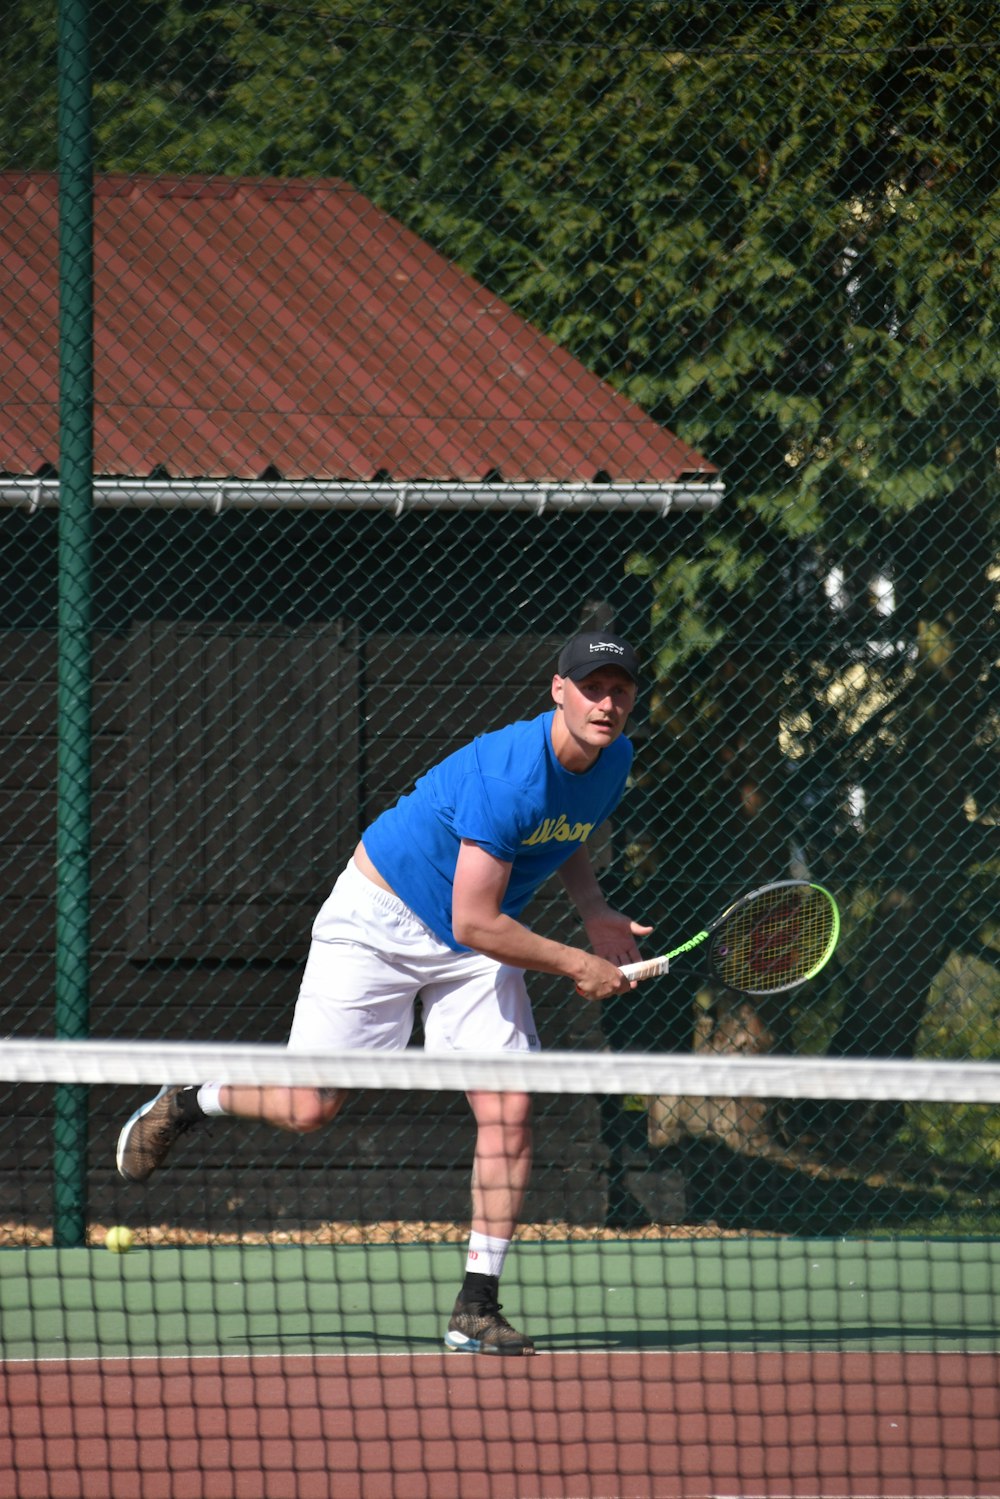 파란색 티셔츠와 흰색 바지를 입은 남자가 낮에 테니스를 친다